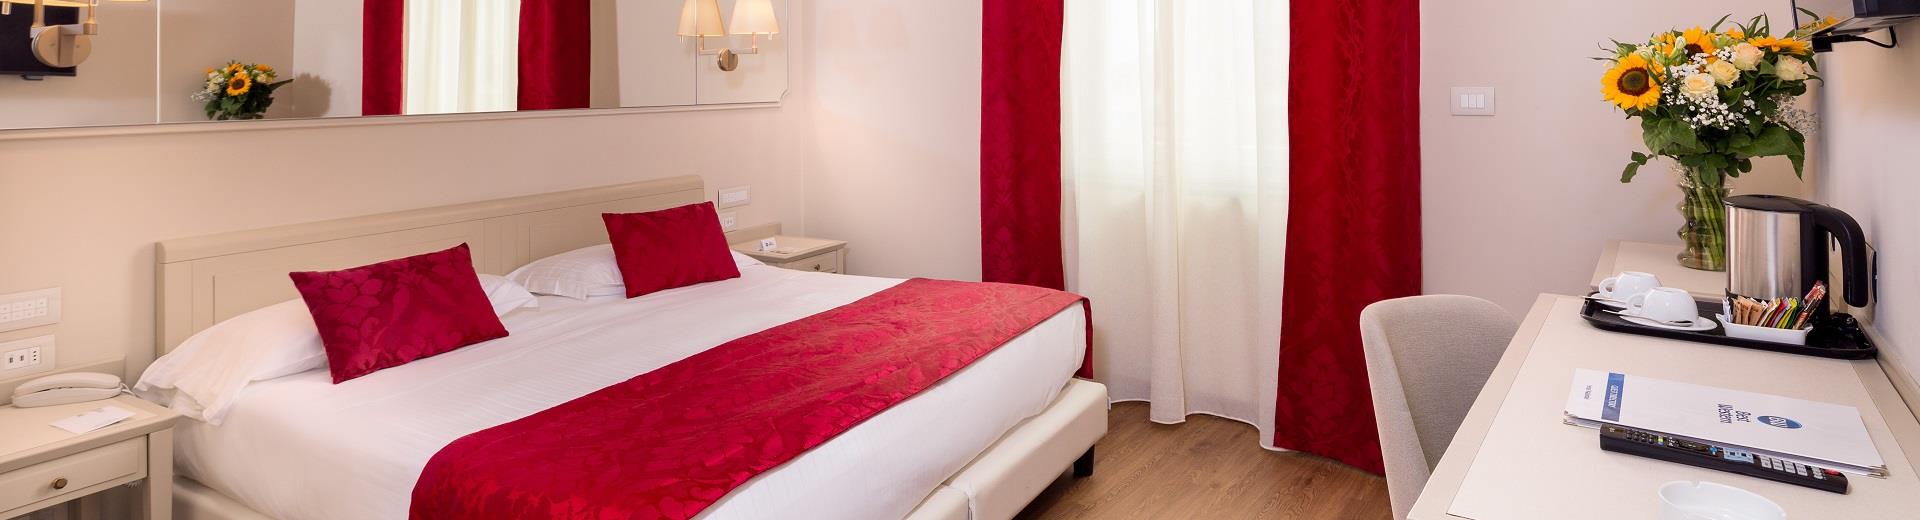 Comfort e servizi nelle camere del BW Hotel Nazionale Sanremo